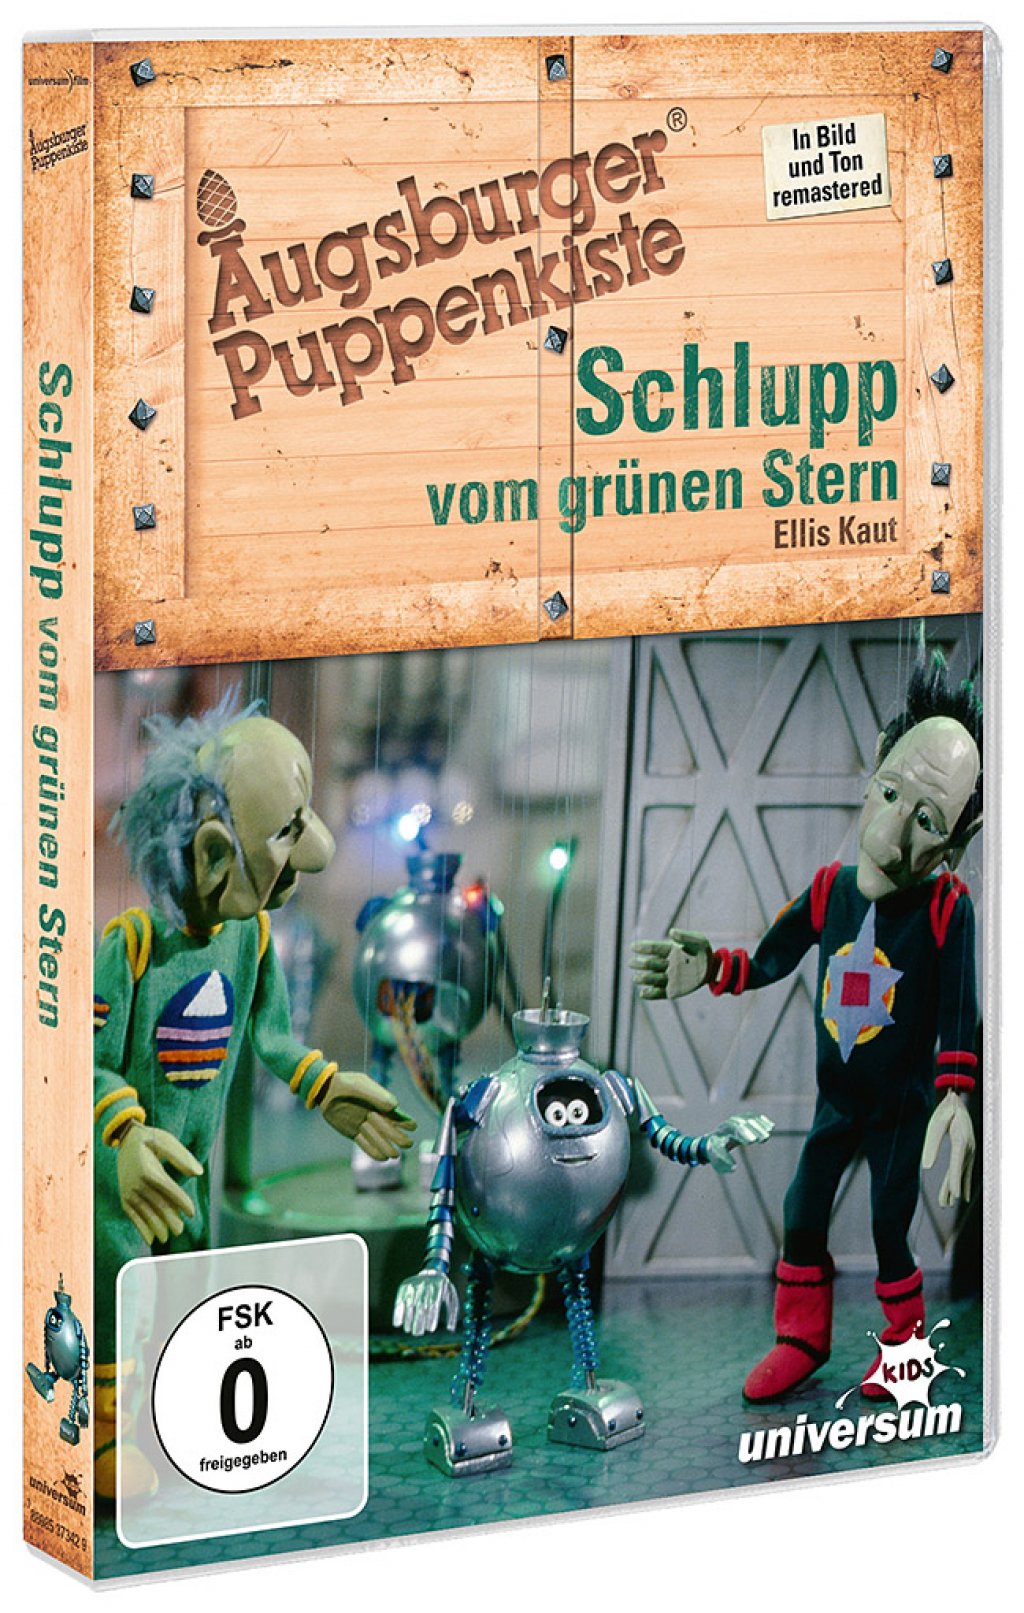 Augsburger Puppenkiste Roboter